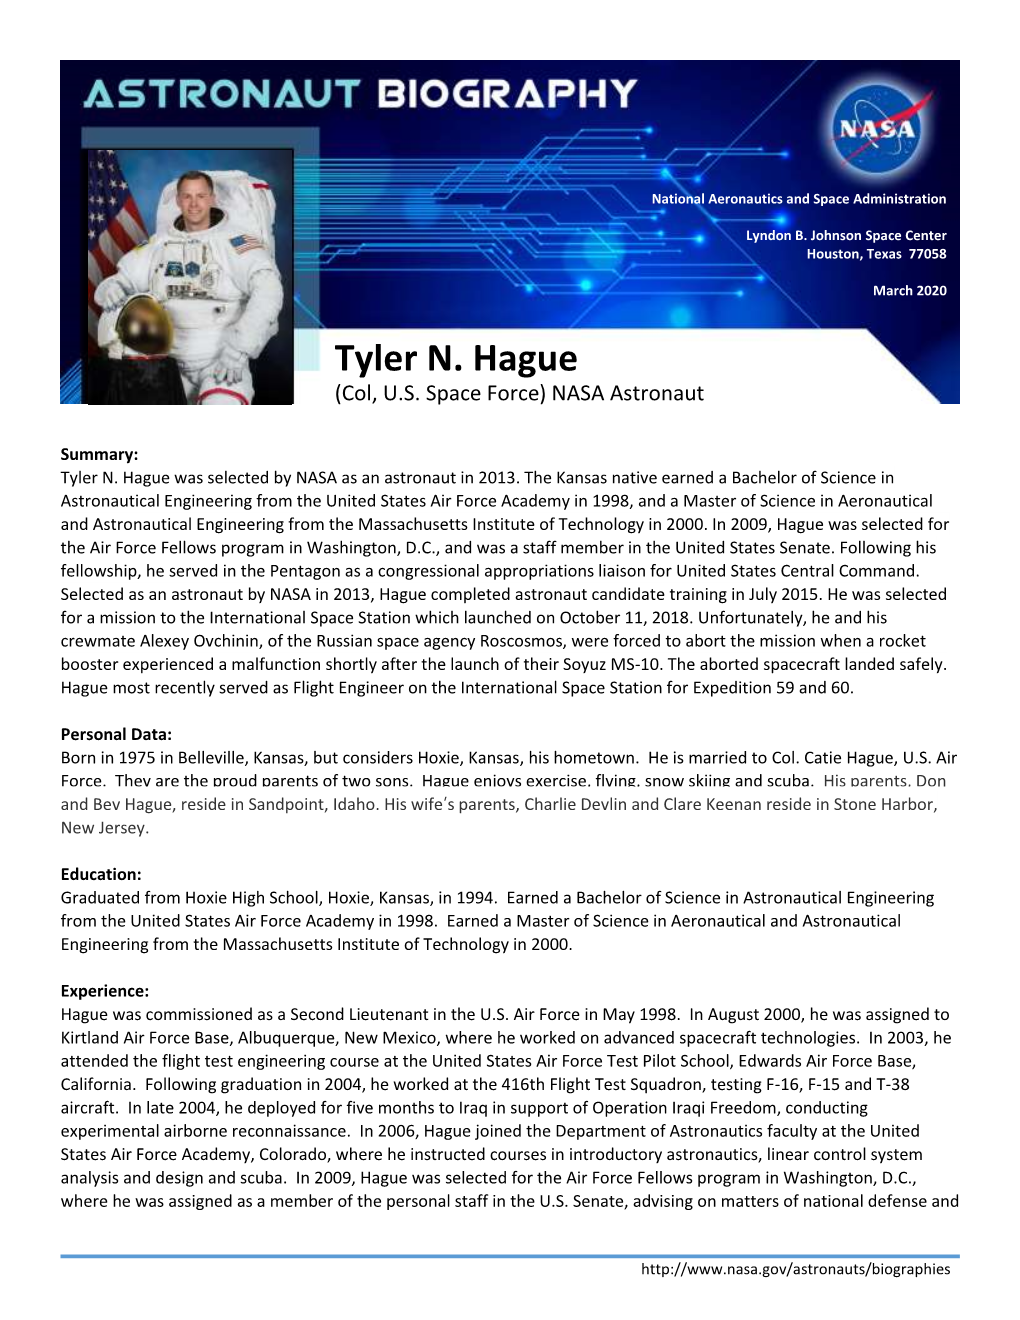 Tyler N. Hague (Col, U.S